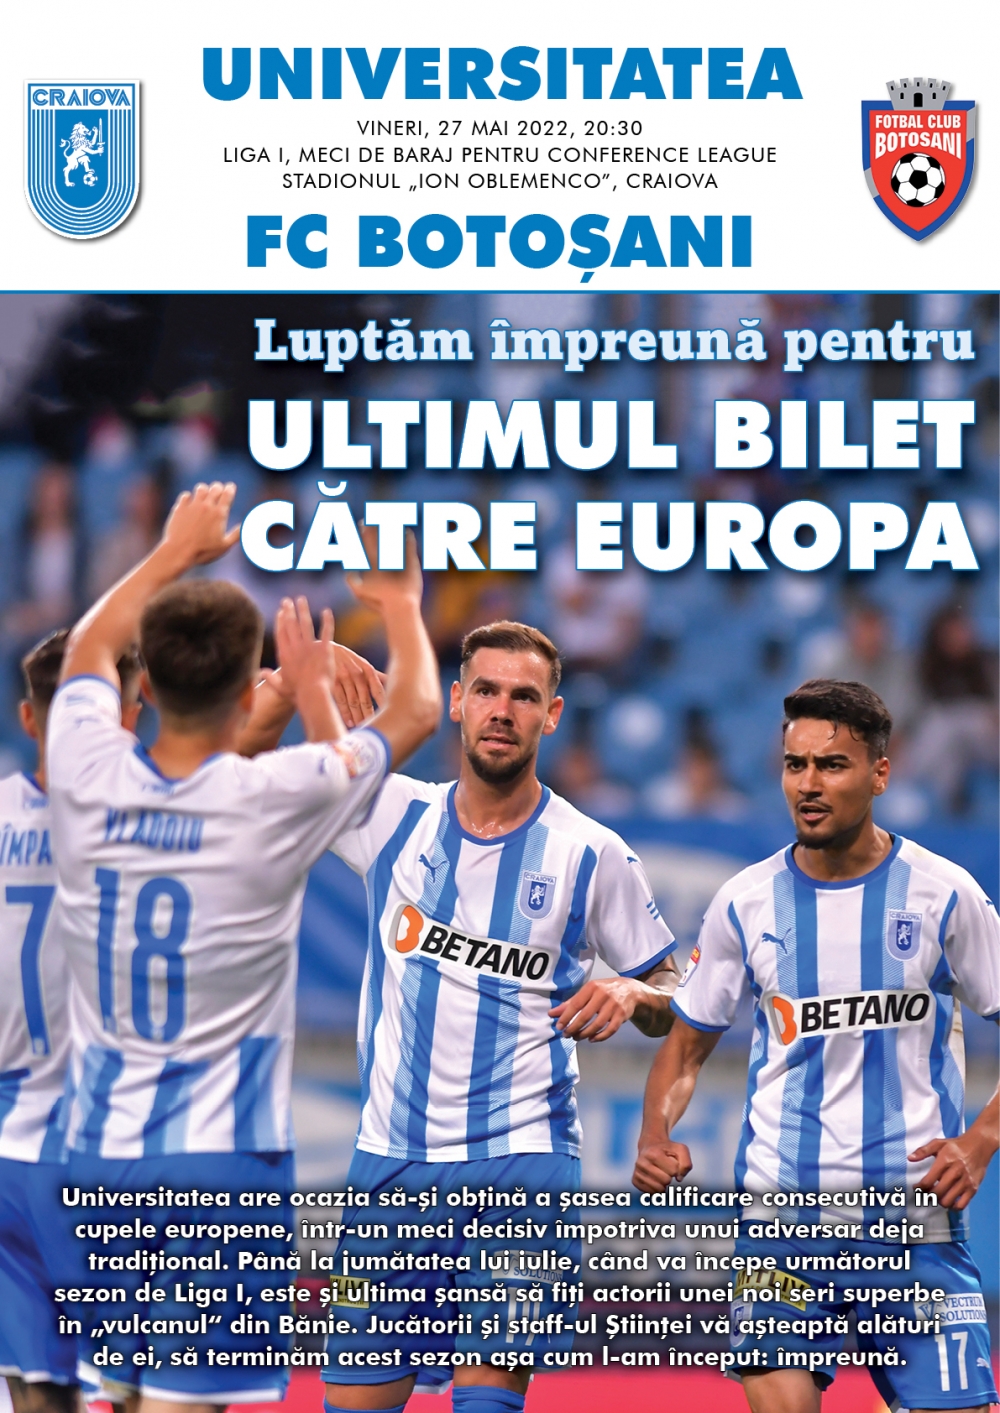 Programul de meci cu FC Botoșani, în format digital